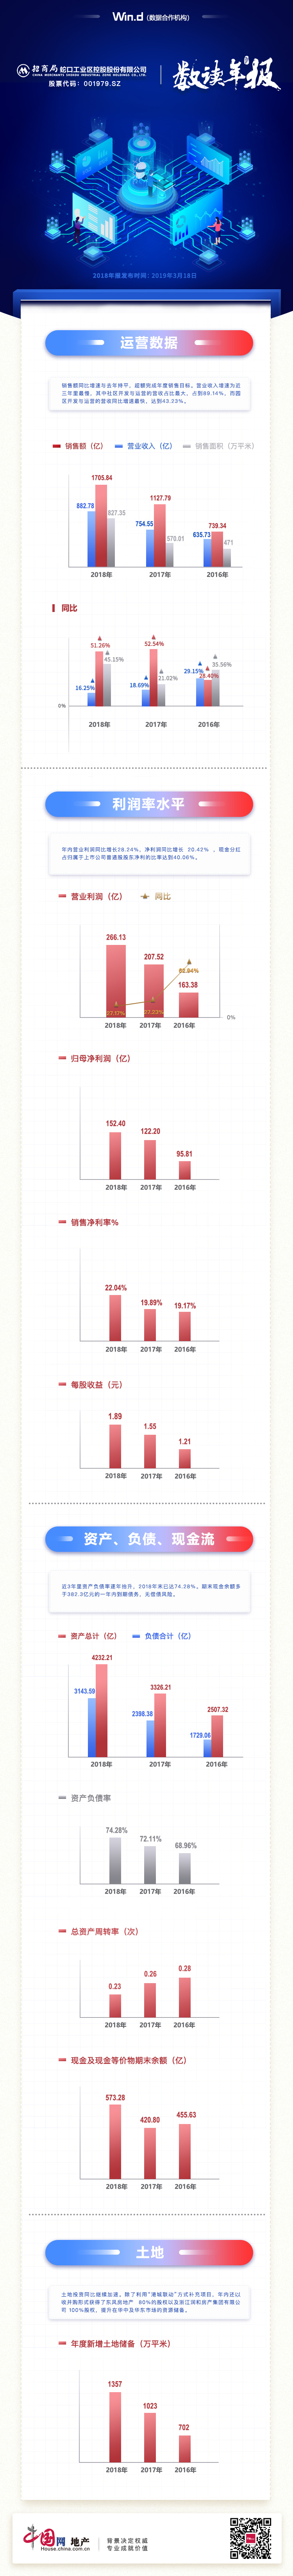 数读年报|招商蛇口：规模增速虽维持仍谨慎 资产负债率略有抬升-中国网地产